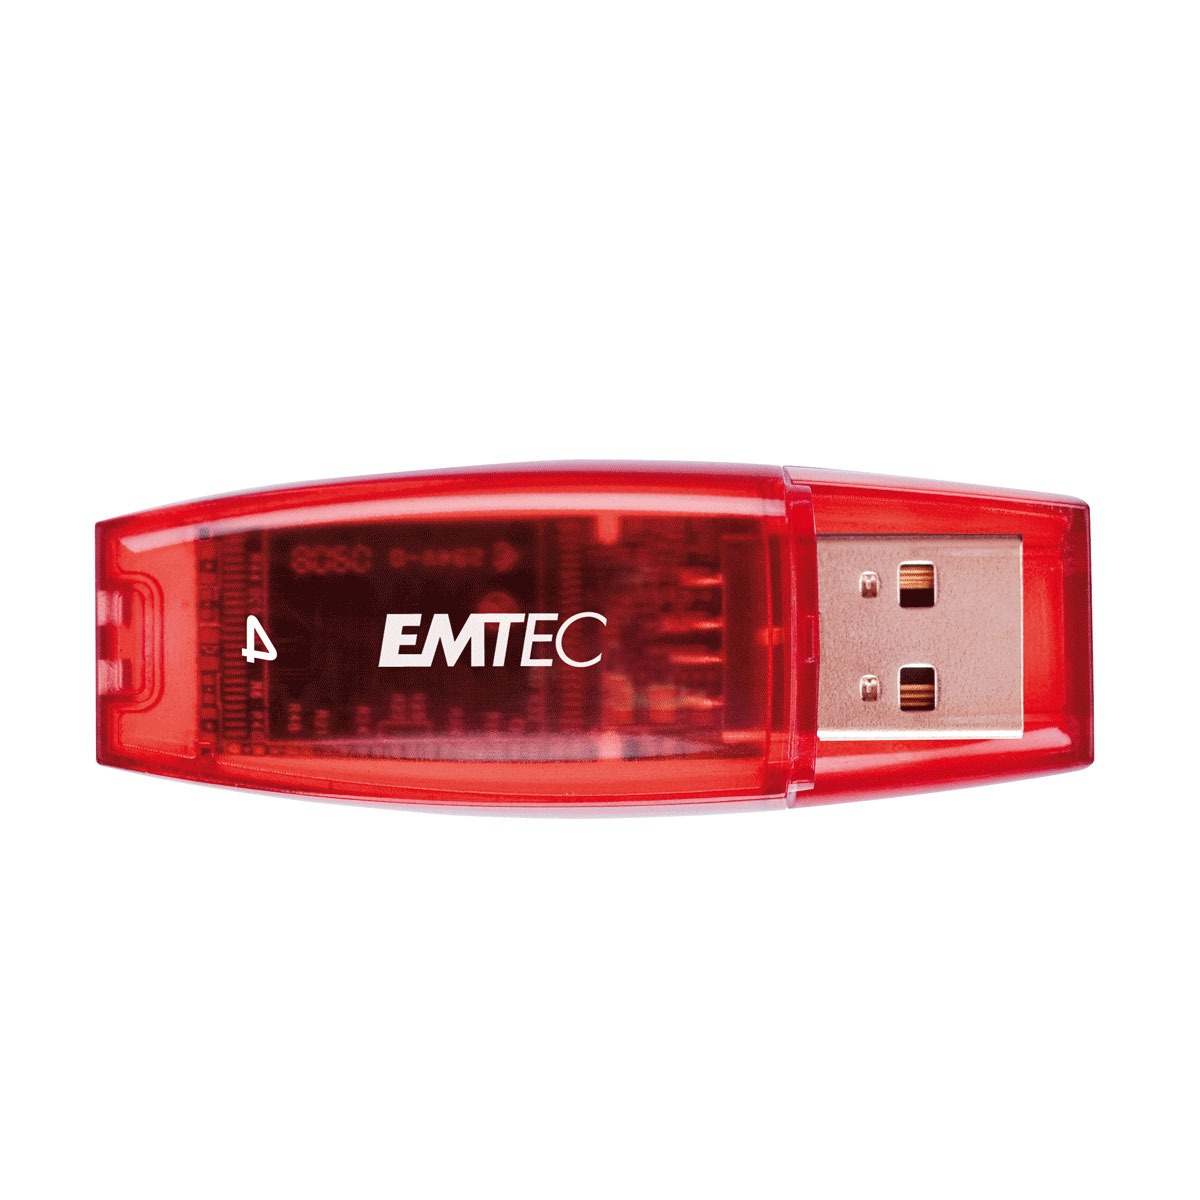 Emtec Usb 3.0 Software